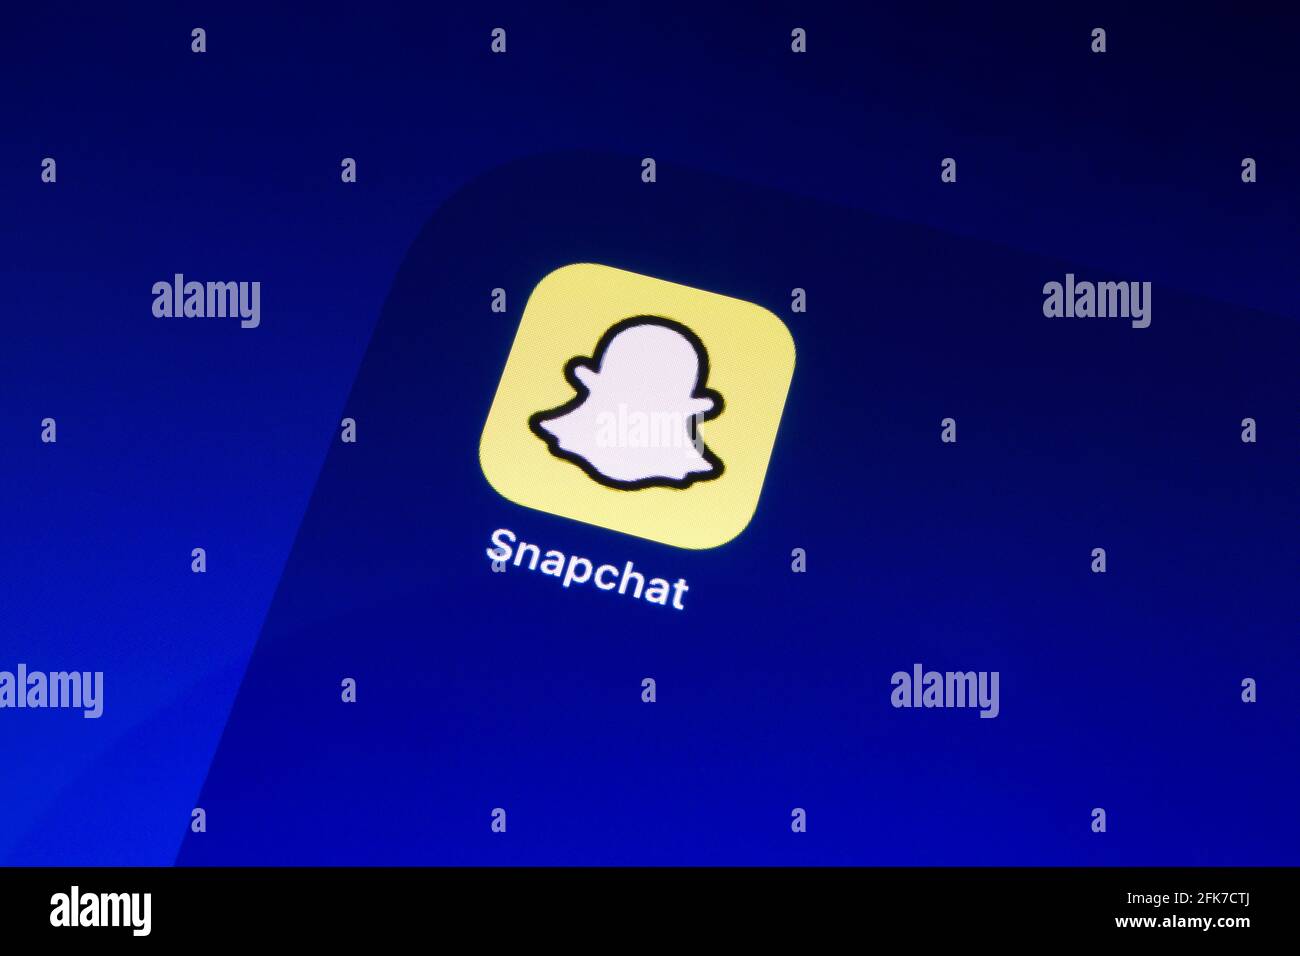 Ostersund, Schweden - 9. Februar 2021: Snapchat App Icon. Snapchat ist eine amerikanische Multimedia-Messaging-App, die von Snap Inc. Entwickelt wurde Stockfoto